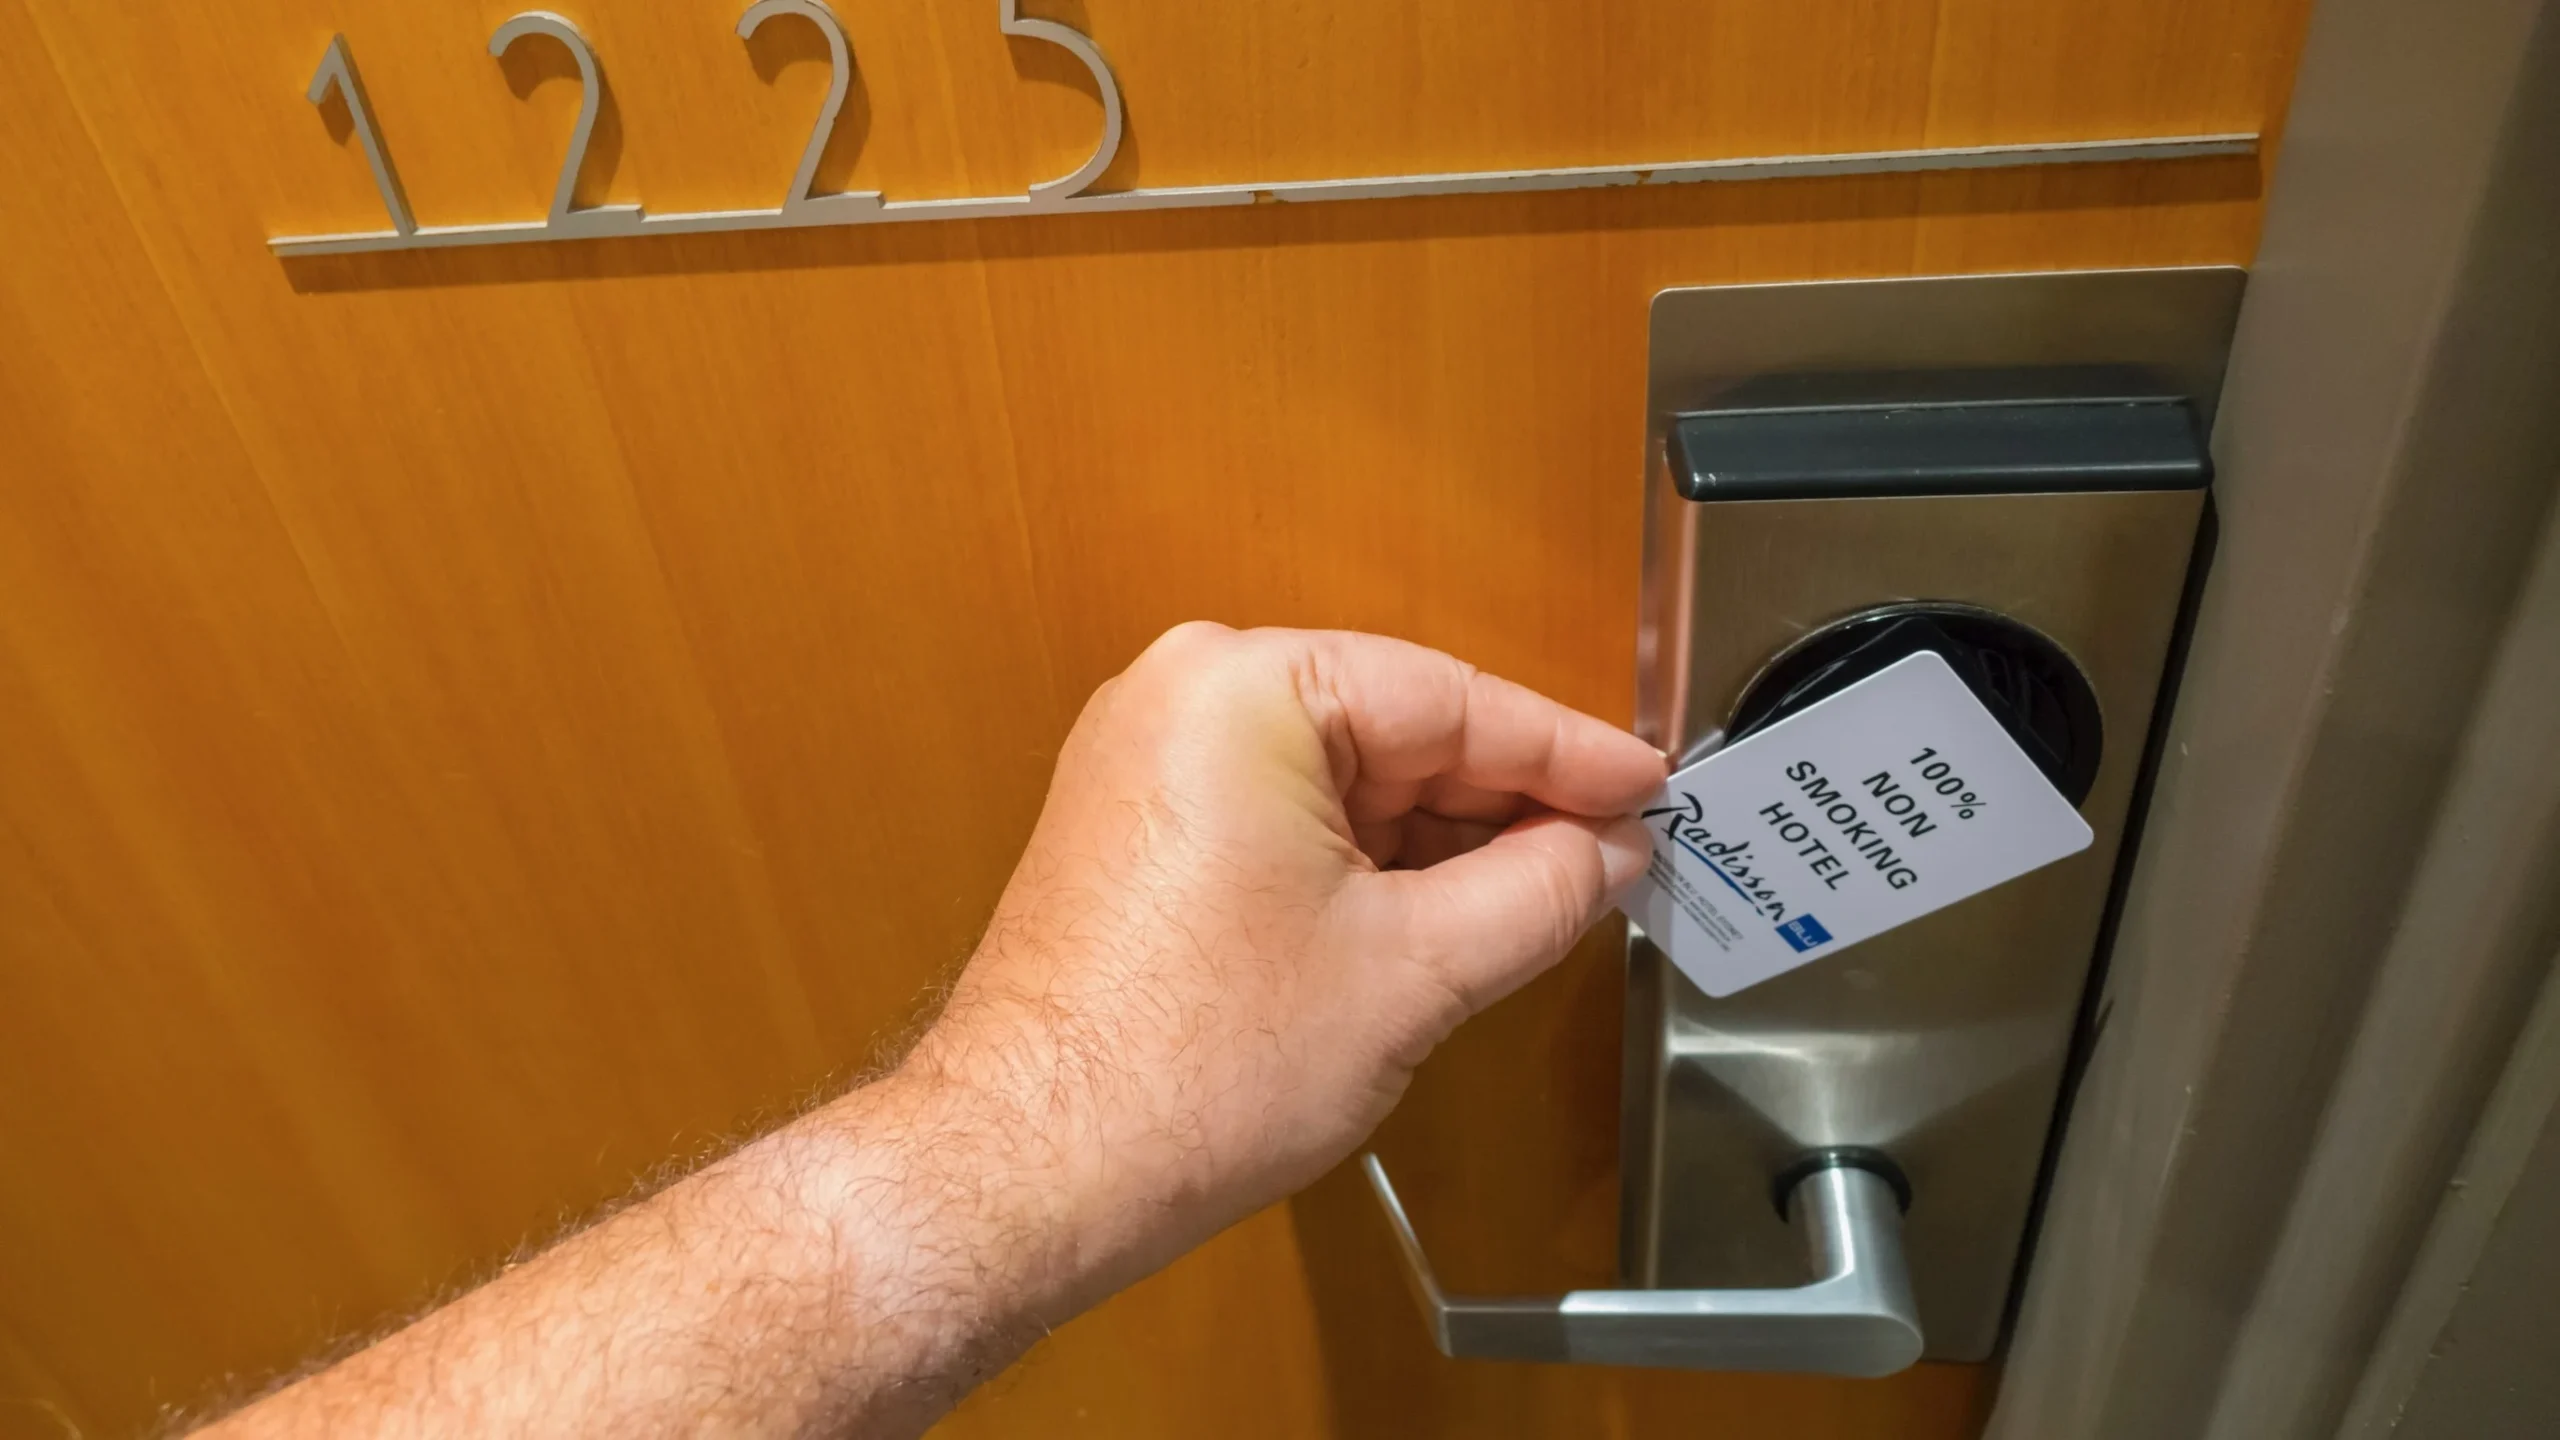 Millions of Hotel Doors Unlocked How a Simple Hack Exposed the Dangers of Digital Keys